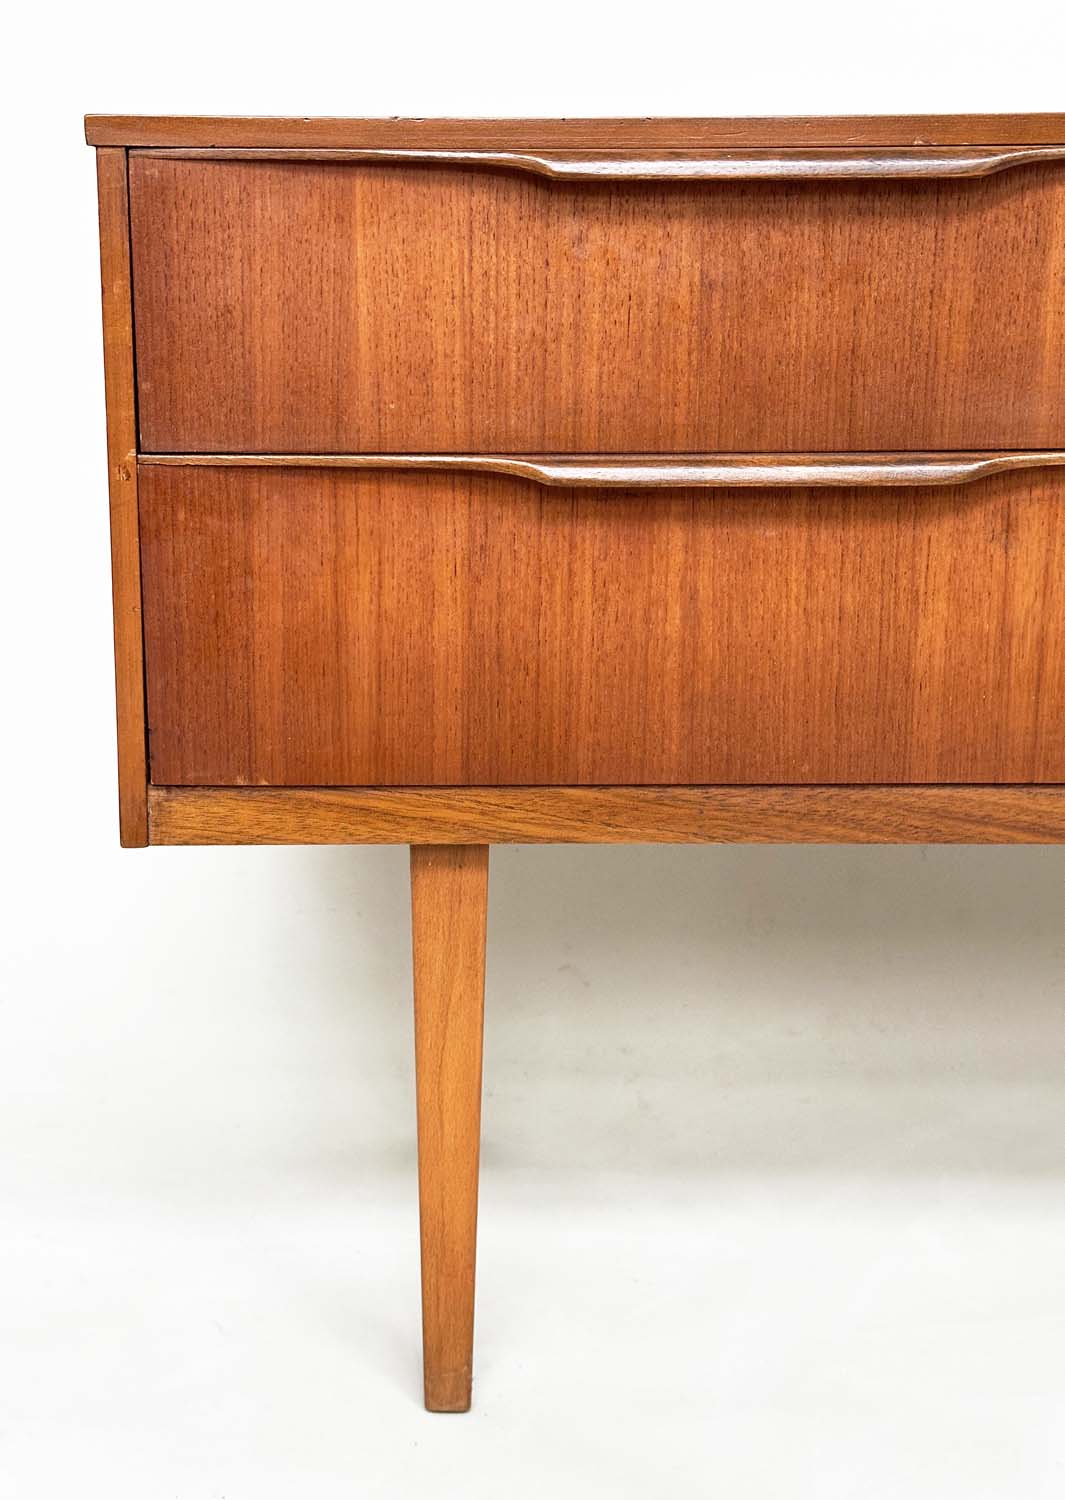 AUSTIN SUITE LOW CHEST, 1970s teak with four drawers, 128cm W x 70cm H x 41cm D. - Image 4 of 11